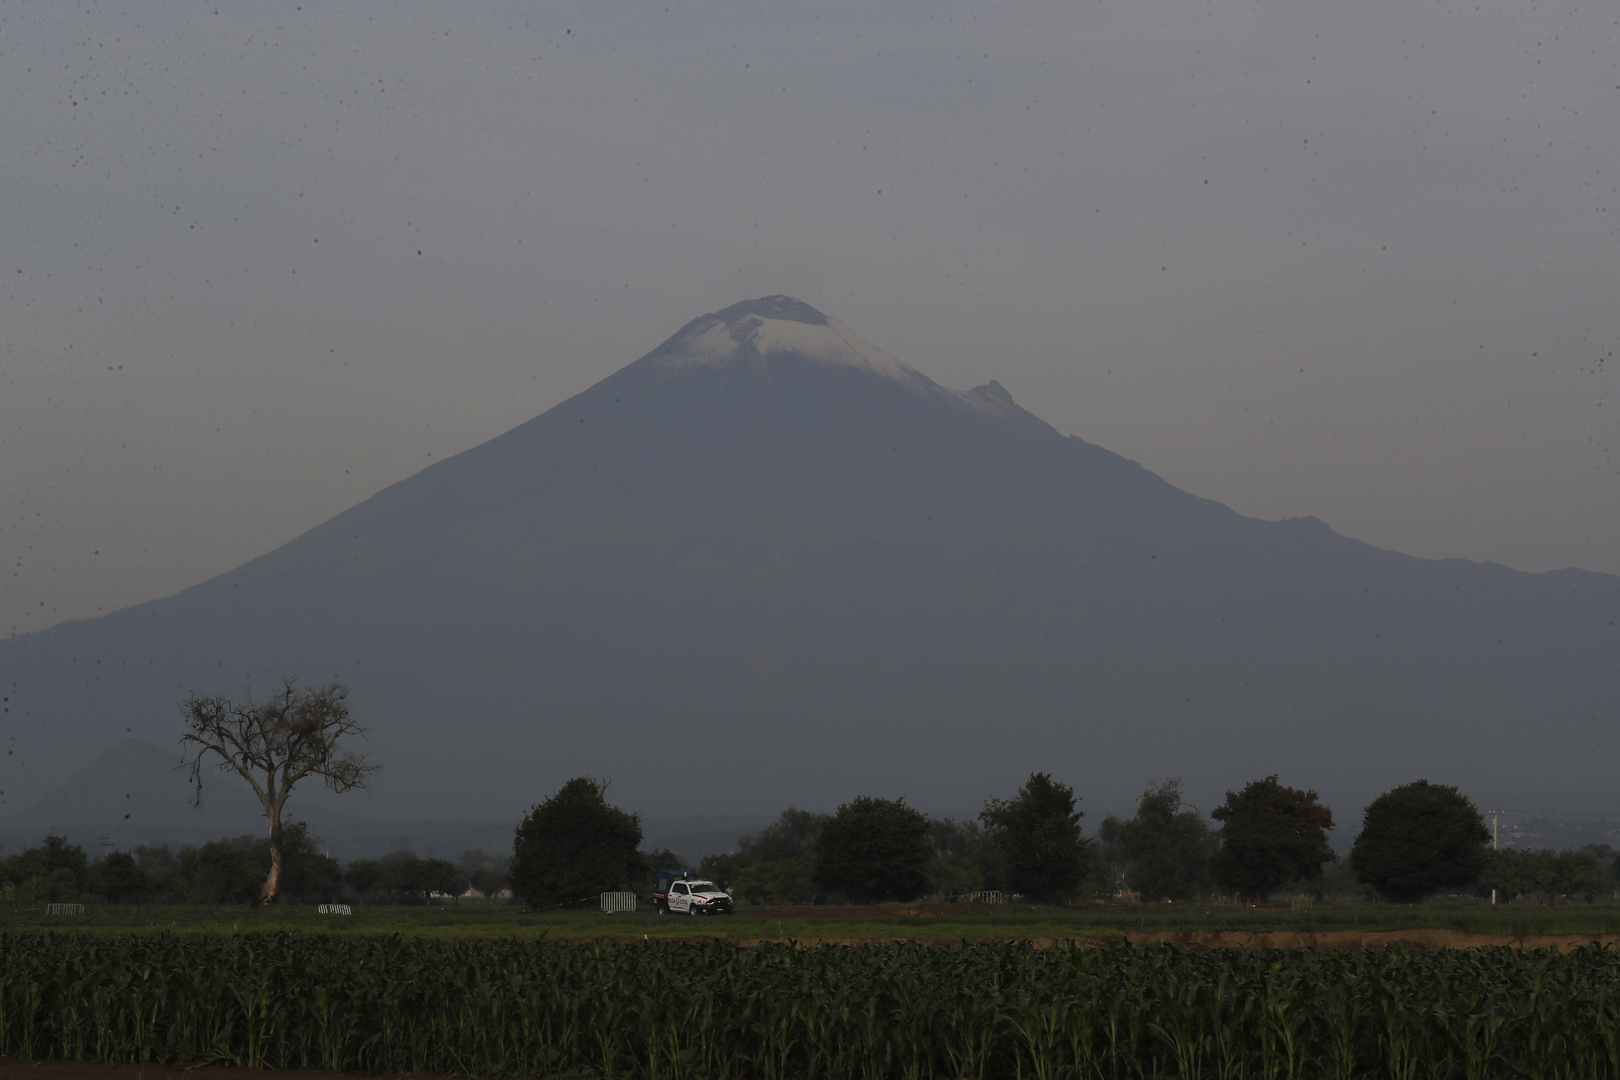 حفرة عملاقة في مزرعة بالمكسيك تتوسع وتبتلع المزيد من الأراضي (فيديو + صور)